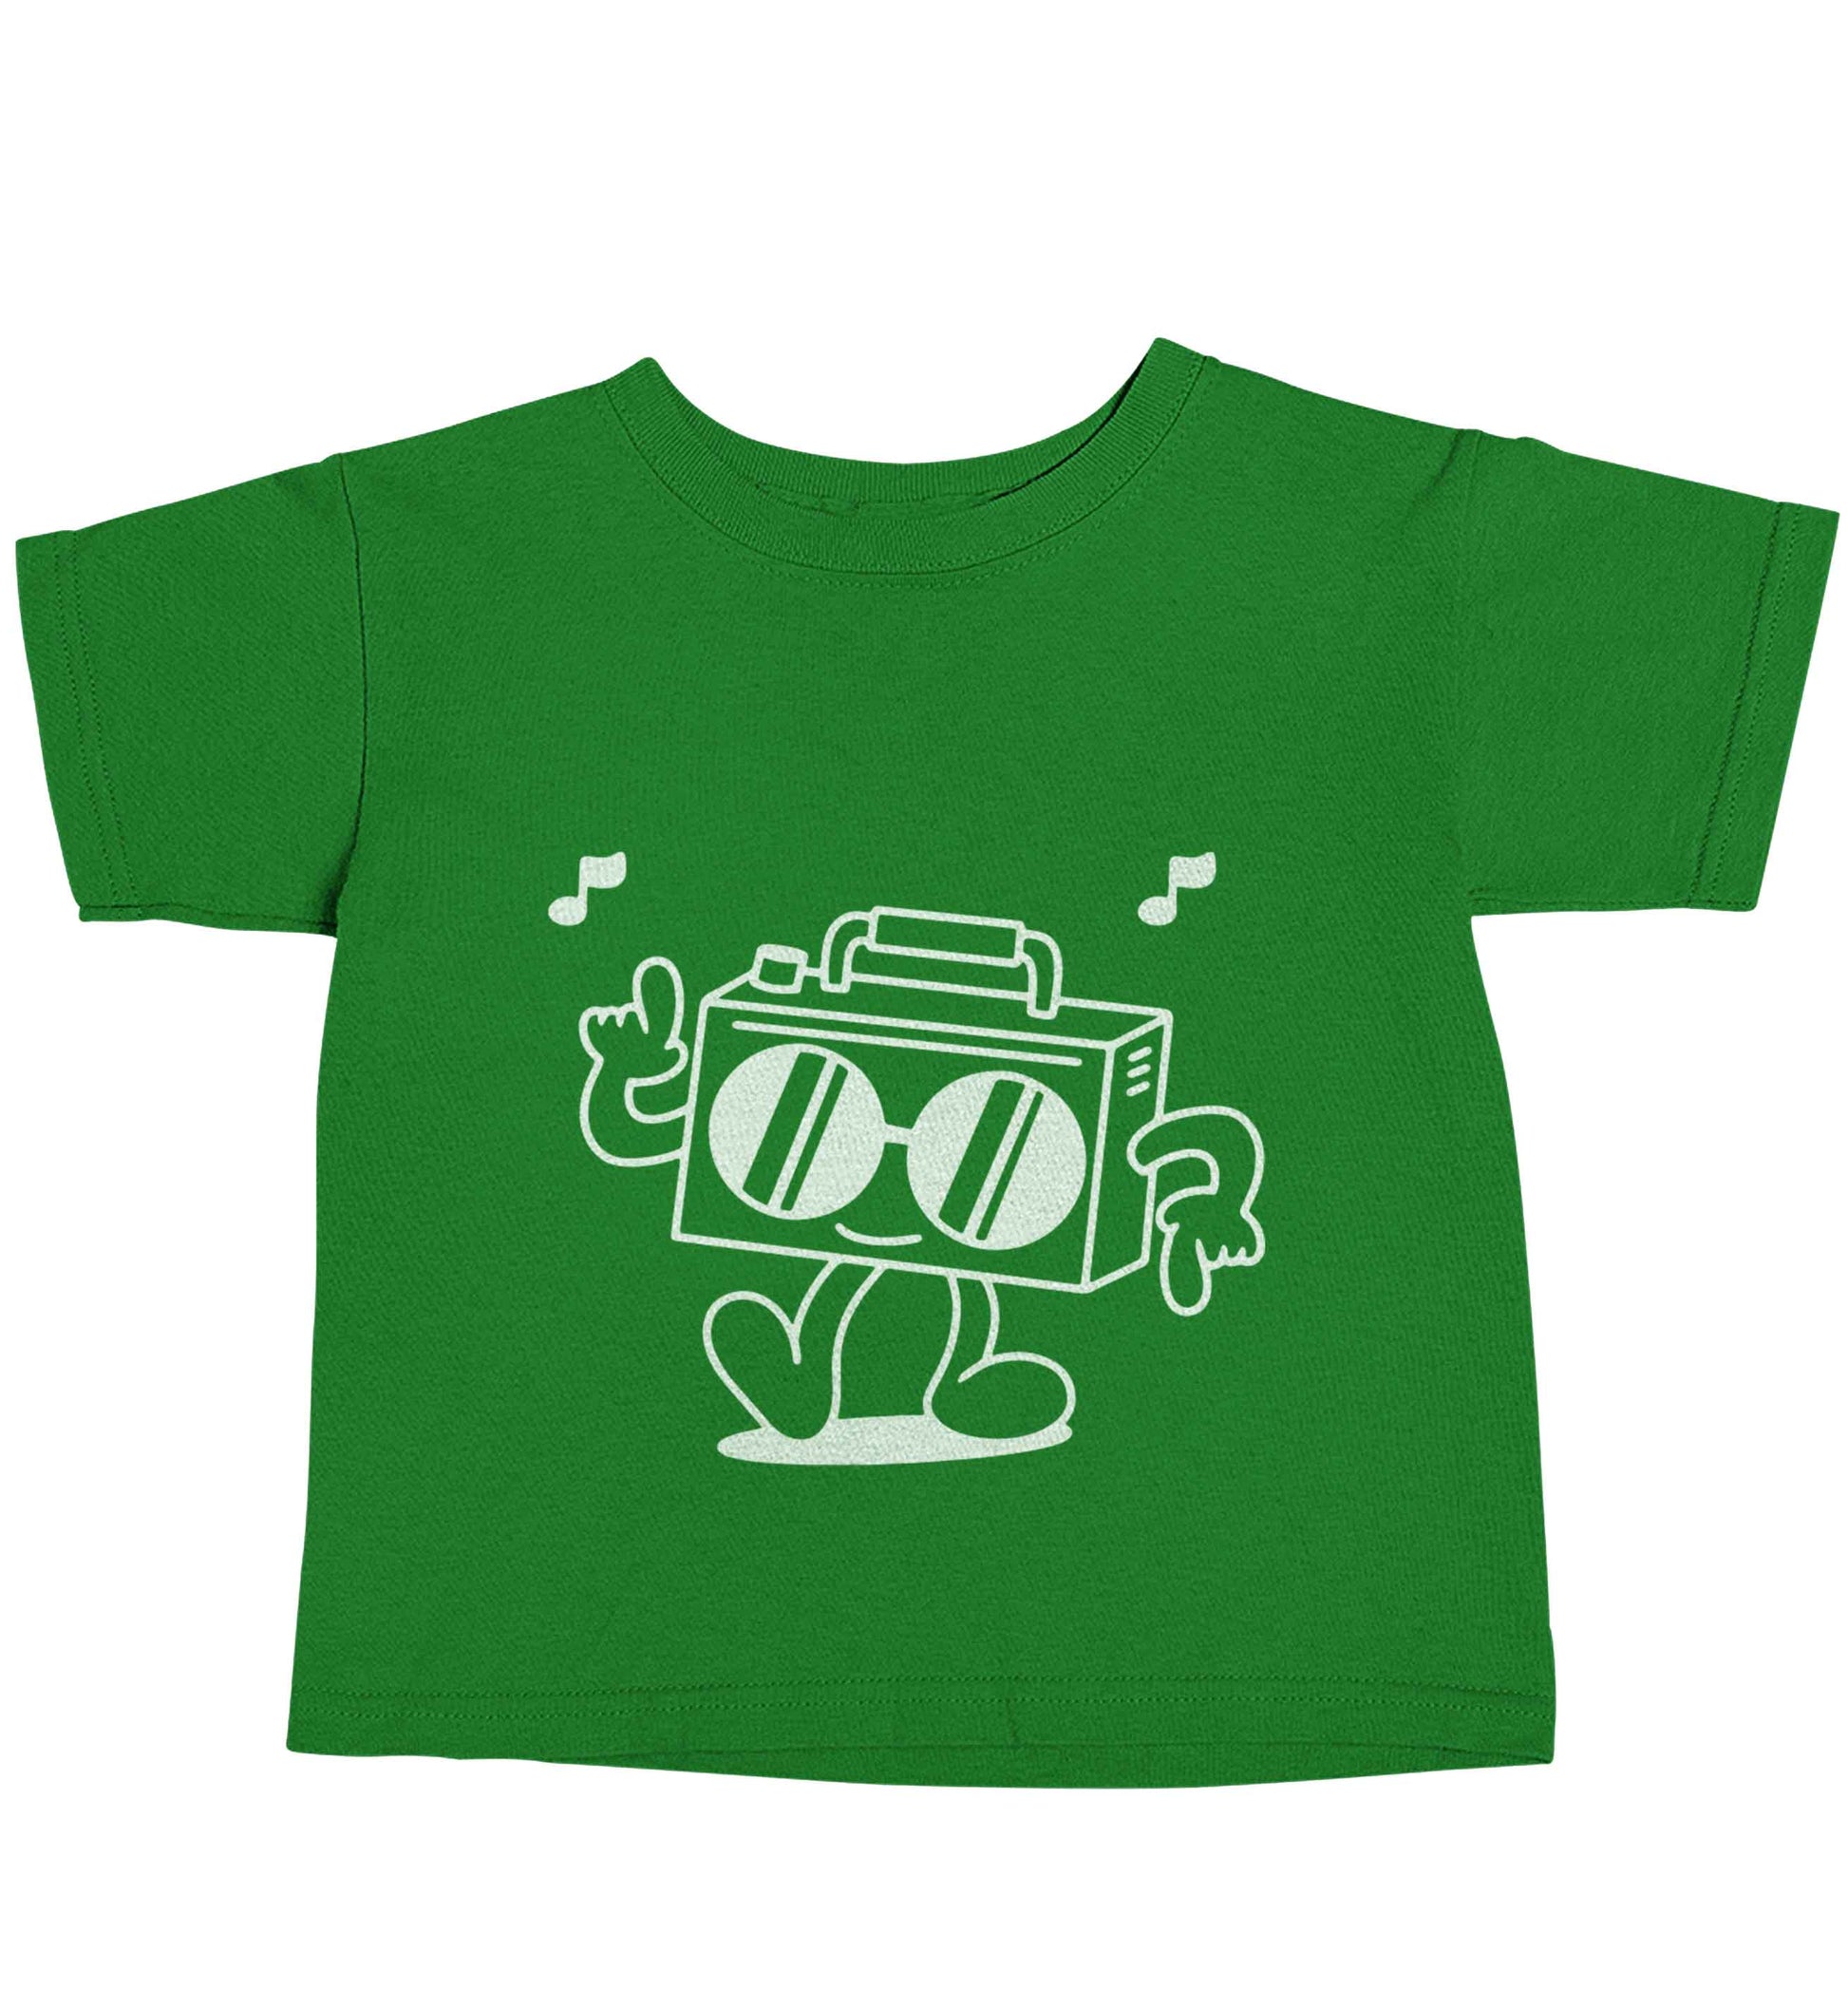 Boombox green baby toddler Tshirt 2 Years